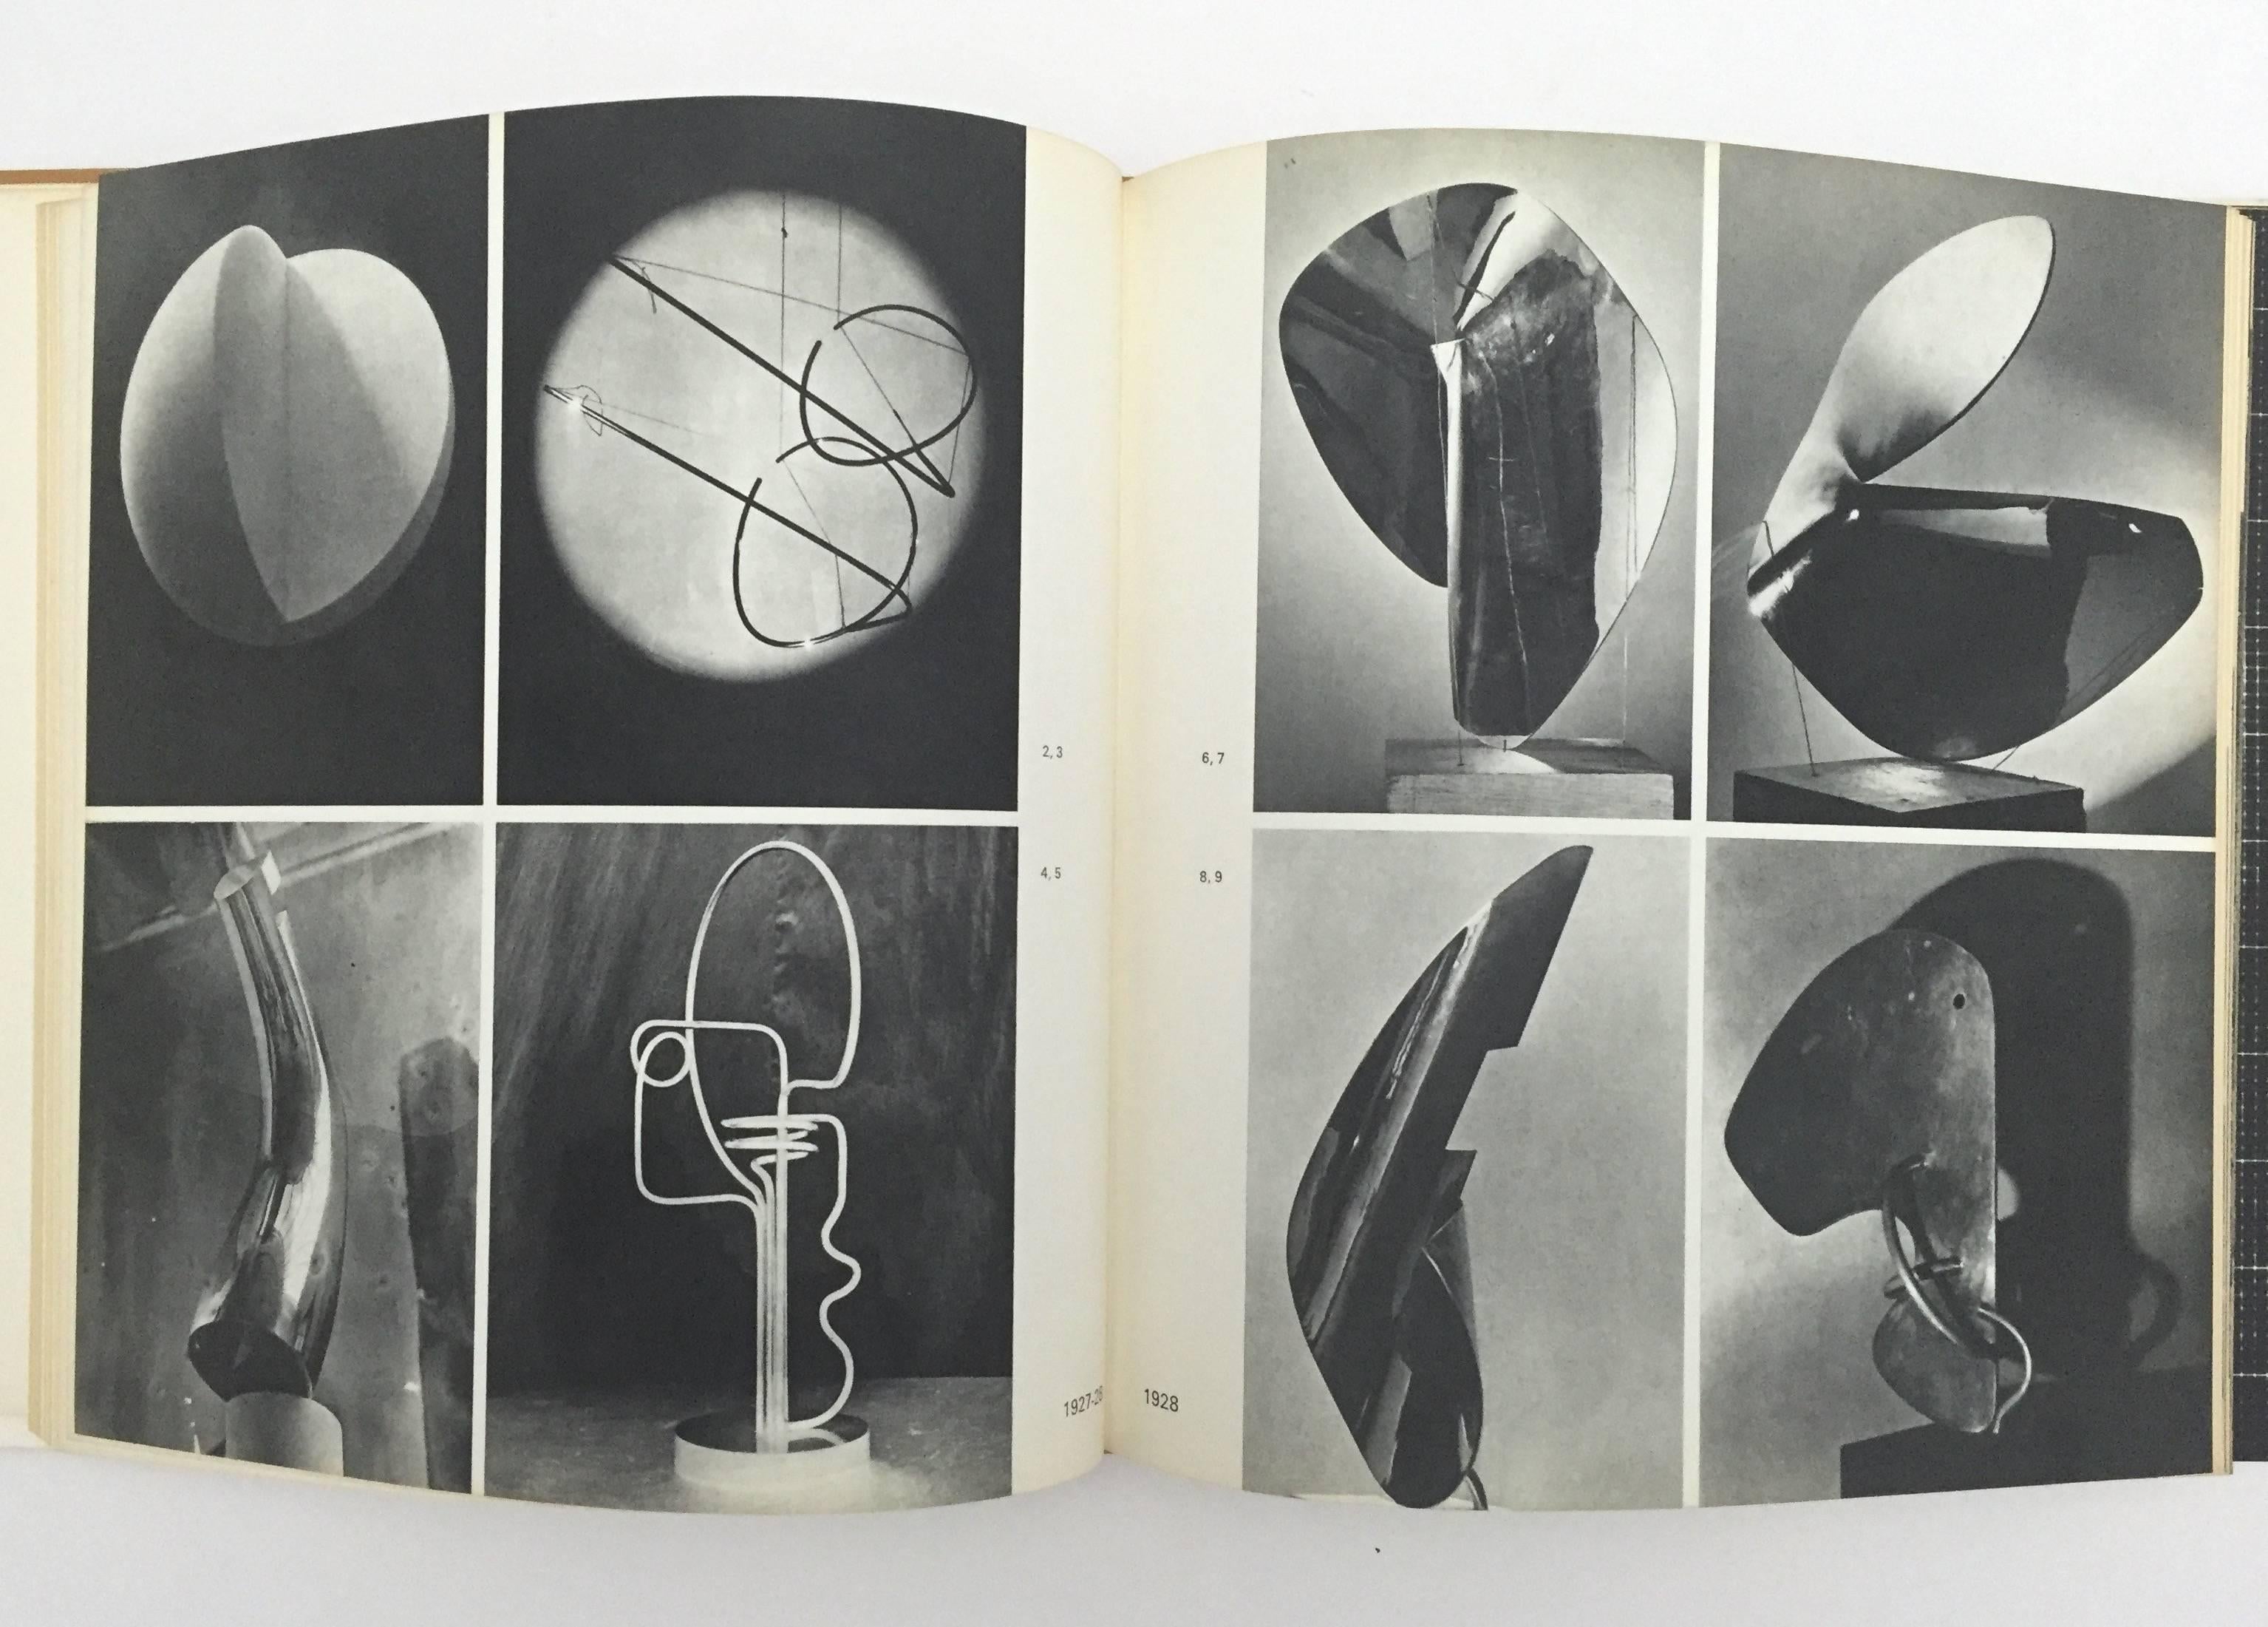 Mid-20th Century Isamu Noguchi, A Sculptor's World - 1967